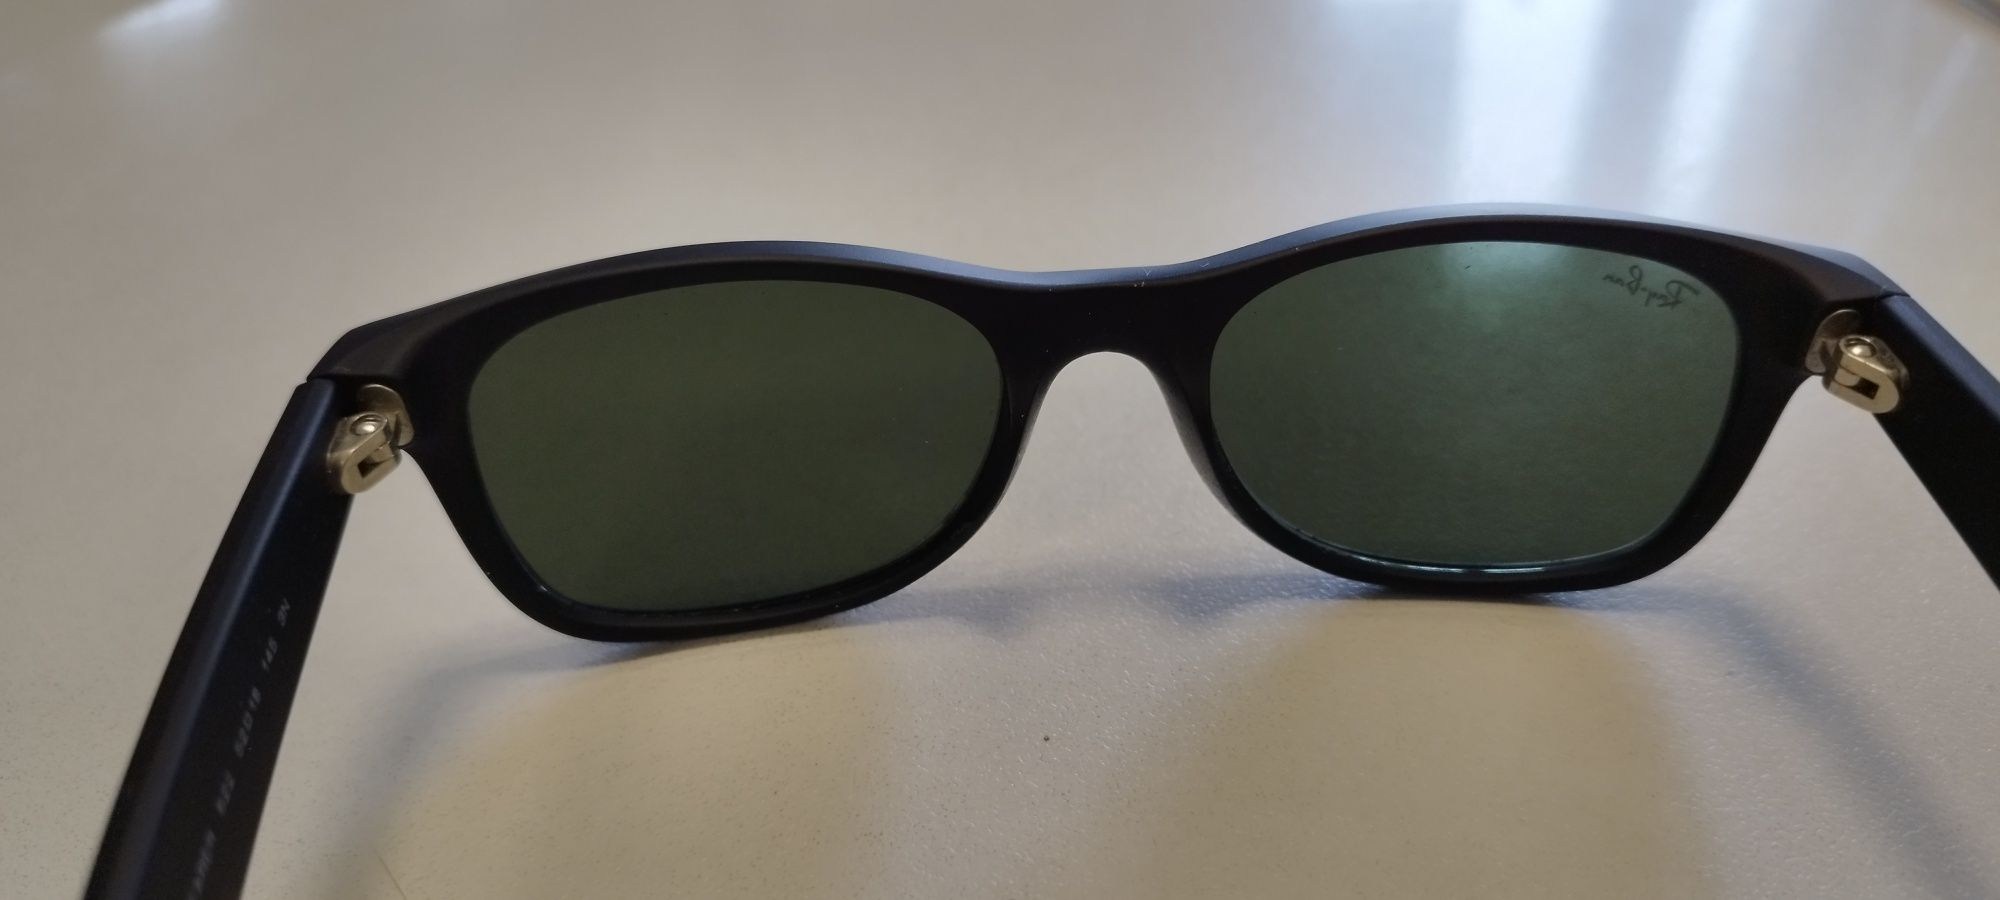 Okulary przeciwsłoneczne Ray Ban New Wayfarer 52×18